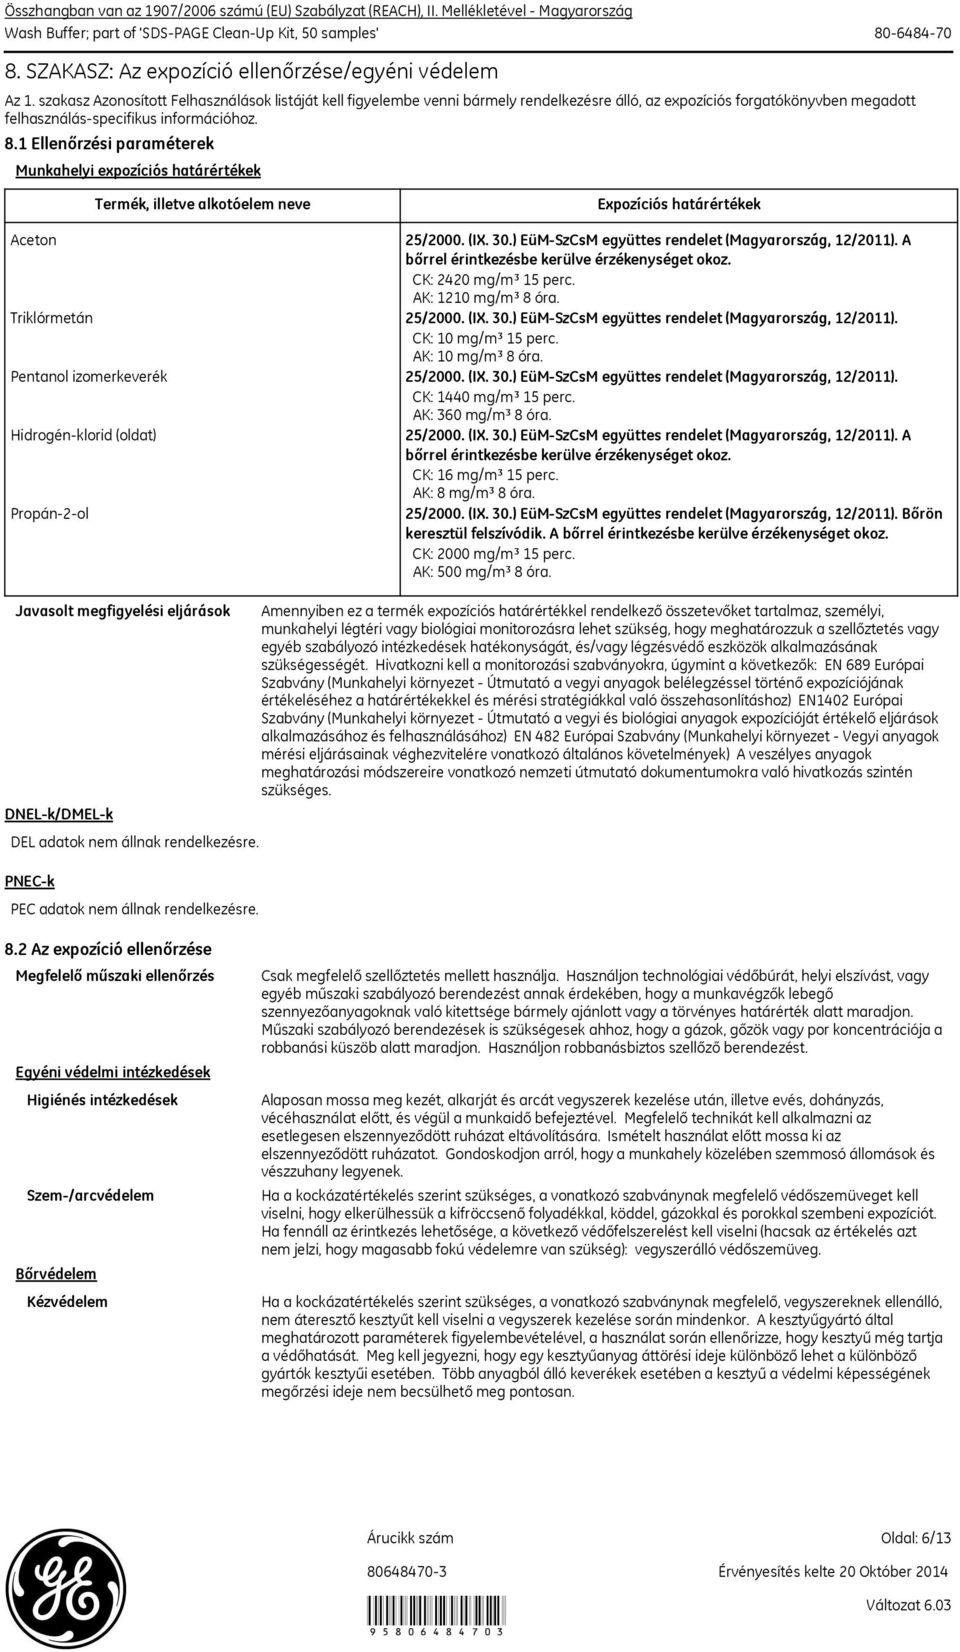 1 Ellenőrzési paraméterek Munkahelyi expozíciós határértékek Termék, illetve alkotóelem neve Expozíciós határértékek Aceton 25/2000. (IX. 30.) EüM-SzCsM együttes rendelet (Magyarország, 12/2011).